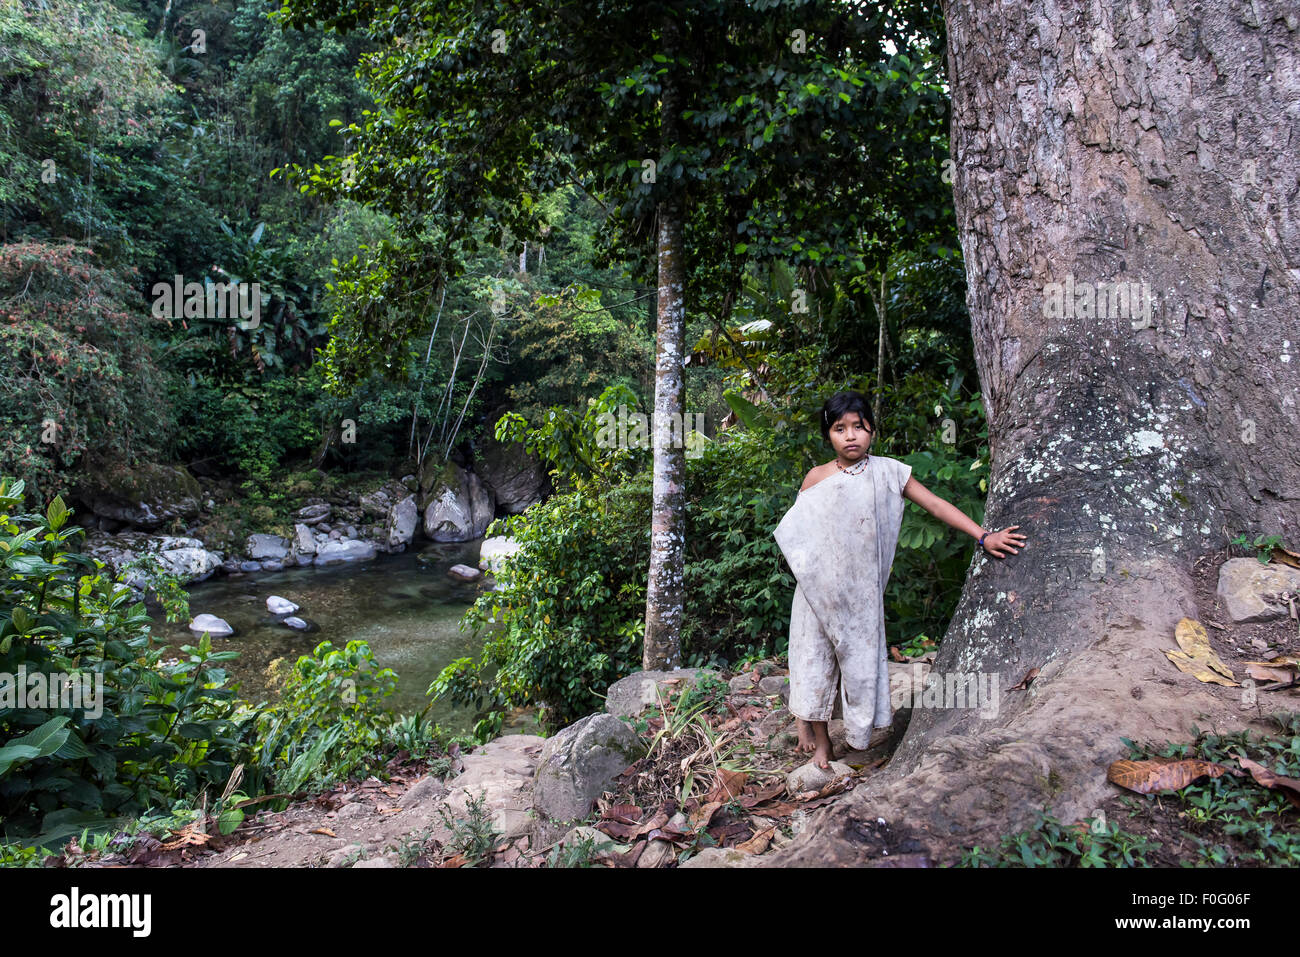 Voller Länge Körper Porträt des jungen Mädchens Kogi oder Cogui Stamm Sierra Nevada in Santa Marta, Kolumbien Stockfoto